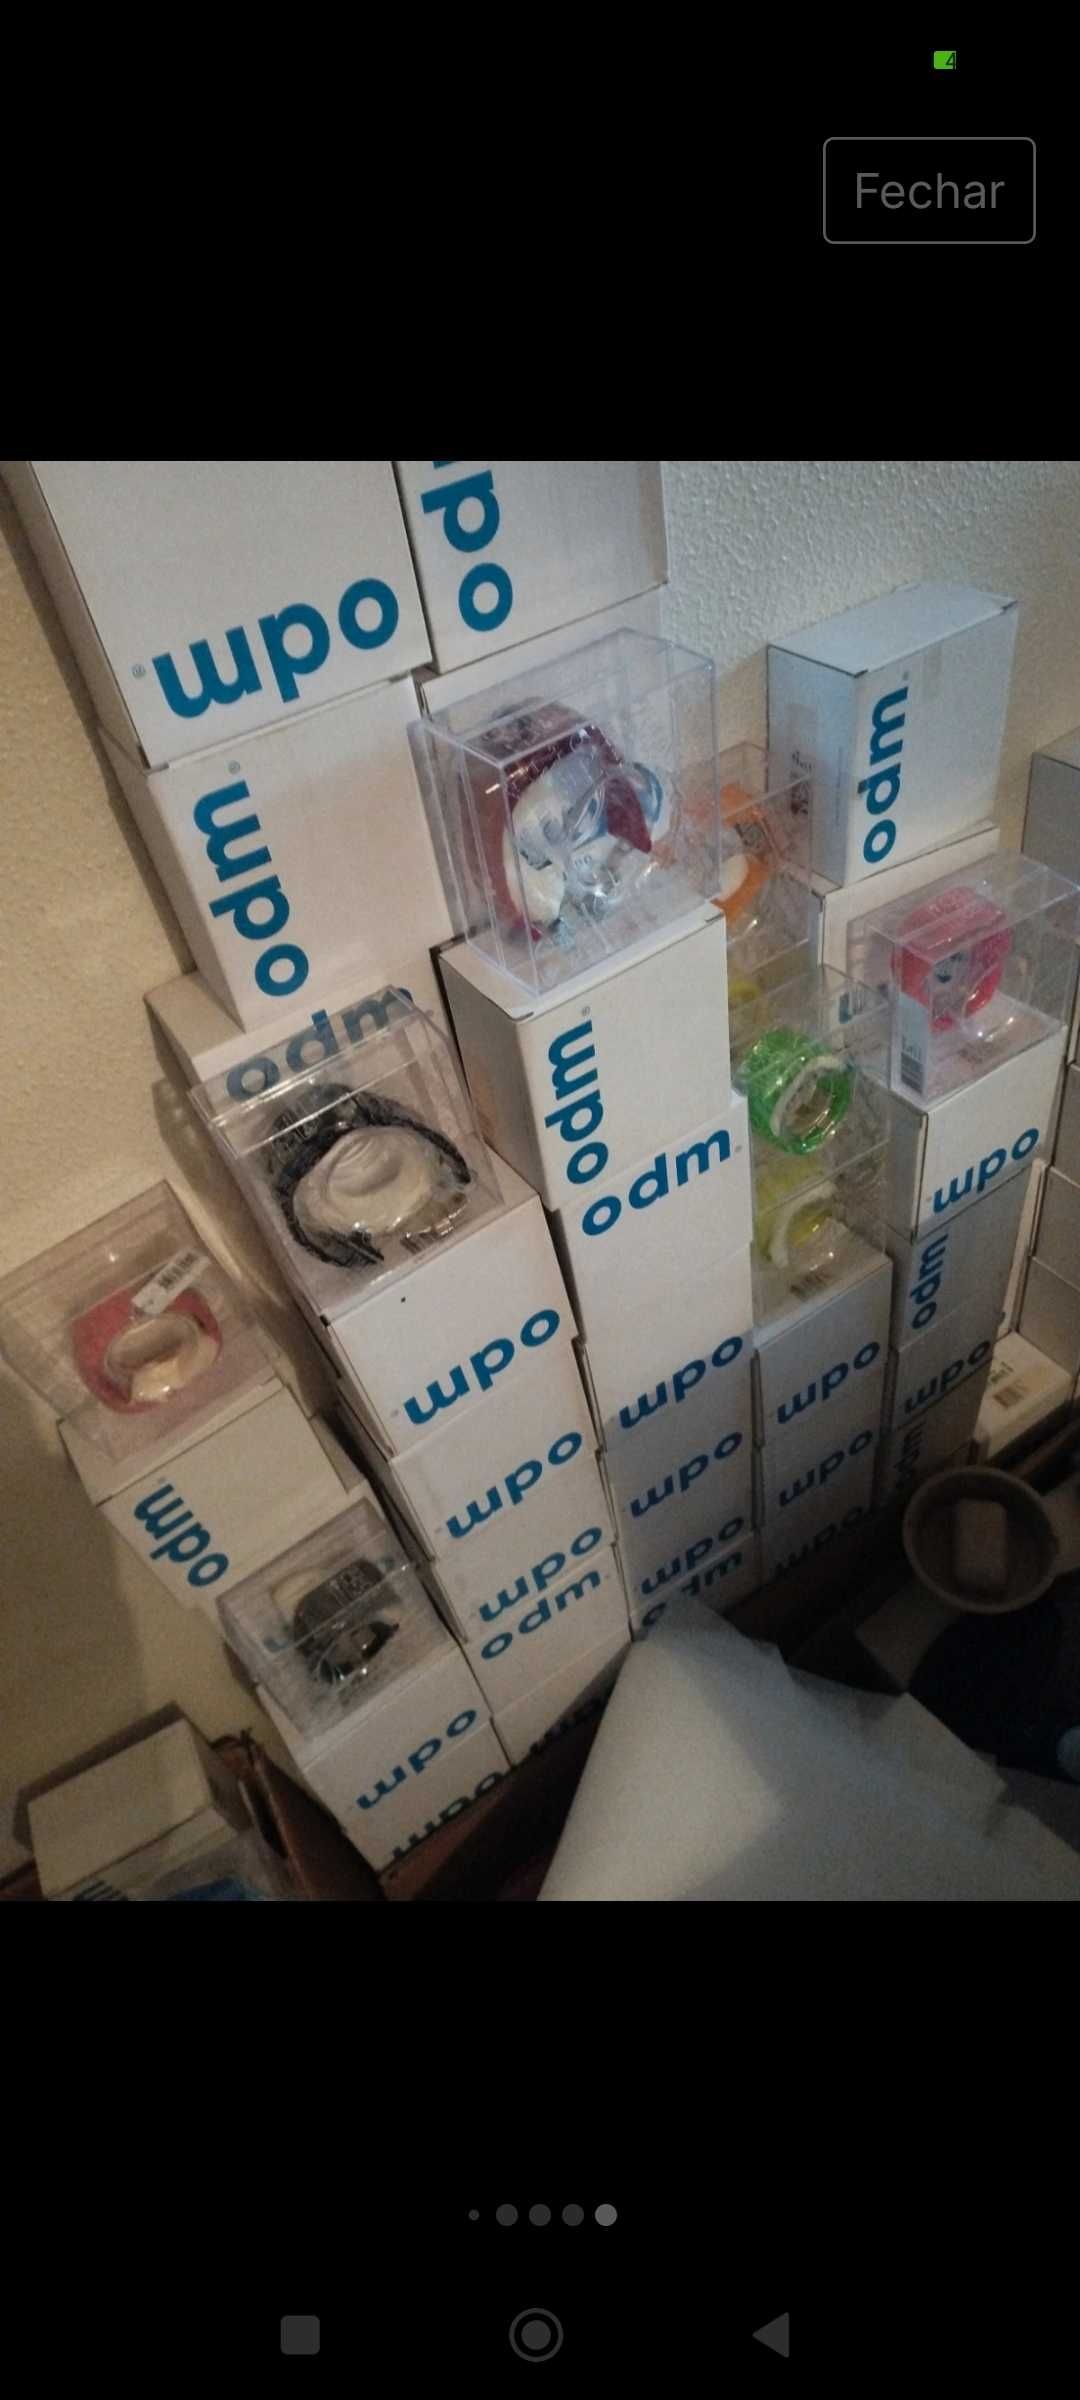 Lote de relógios novos em caixa. Com etiqueta de preço. Várias cores